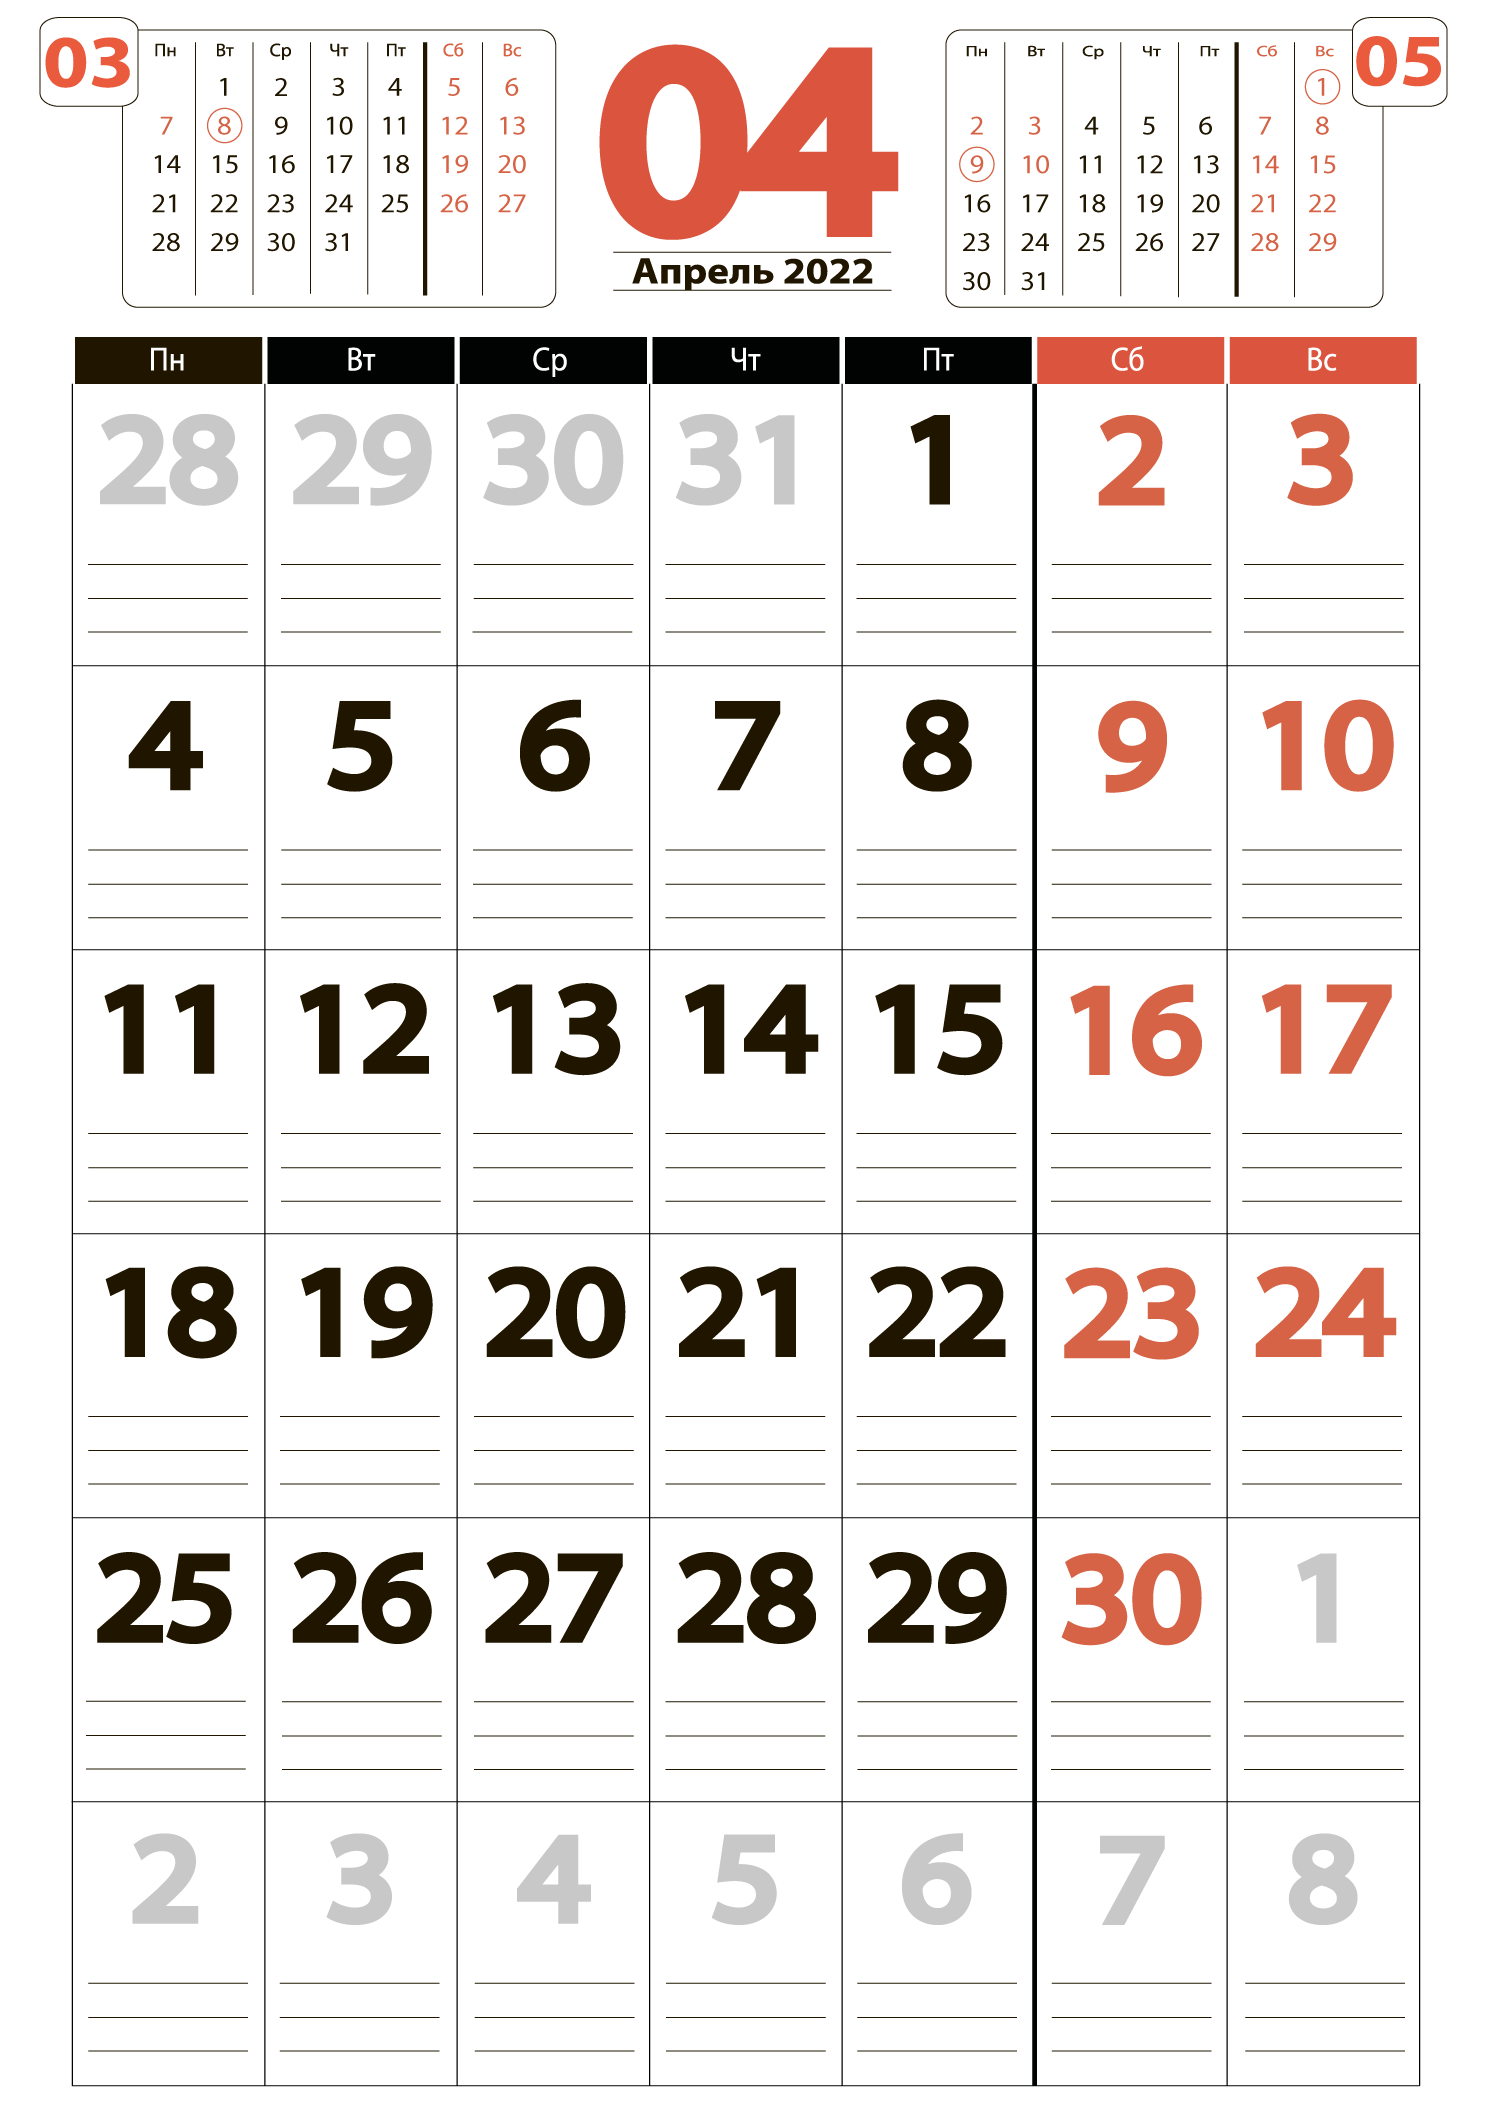 Печать крупного календаря на апрель 2022